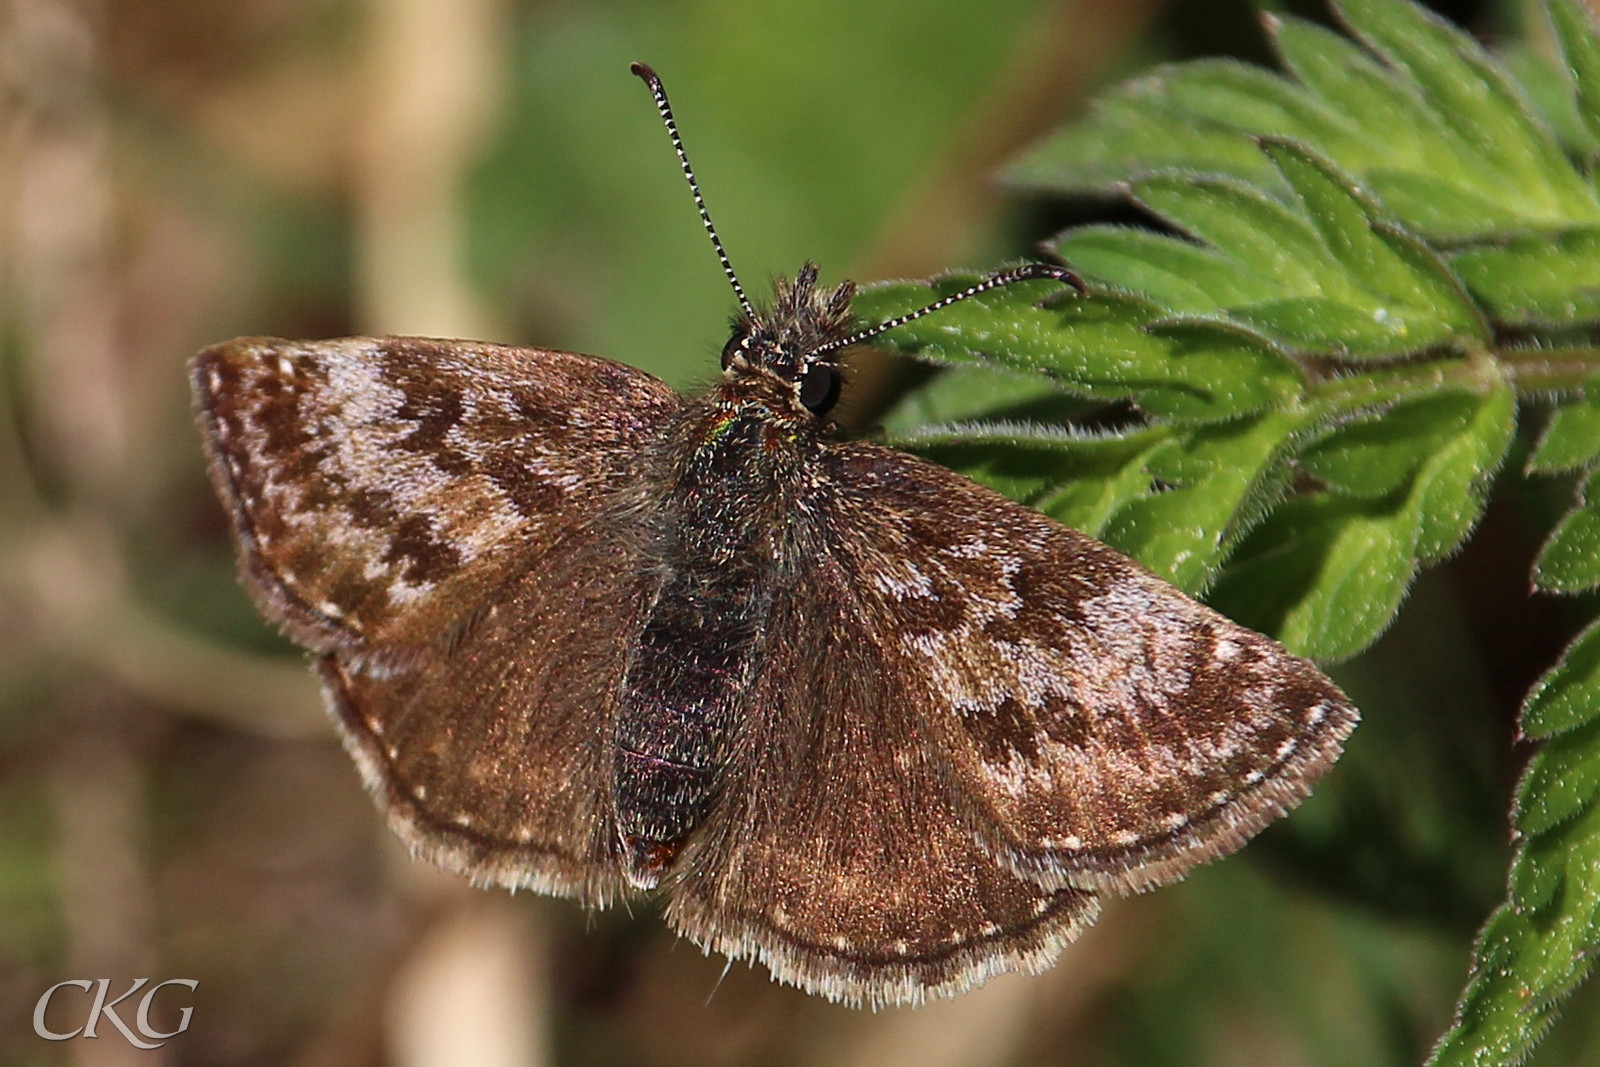 Framvingarna har nästan lusekoftemönster medan bakvingarna är med enfärgad mörkbruna, förutom del eleganta raden av pyttesmå vit kantprickar.